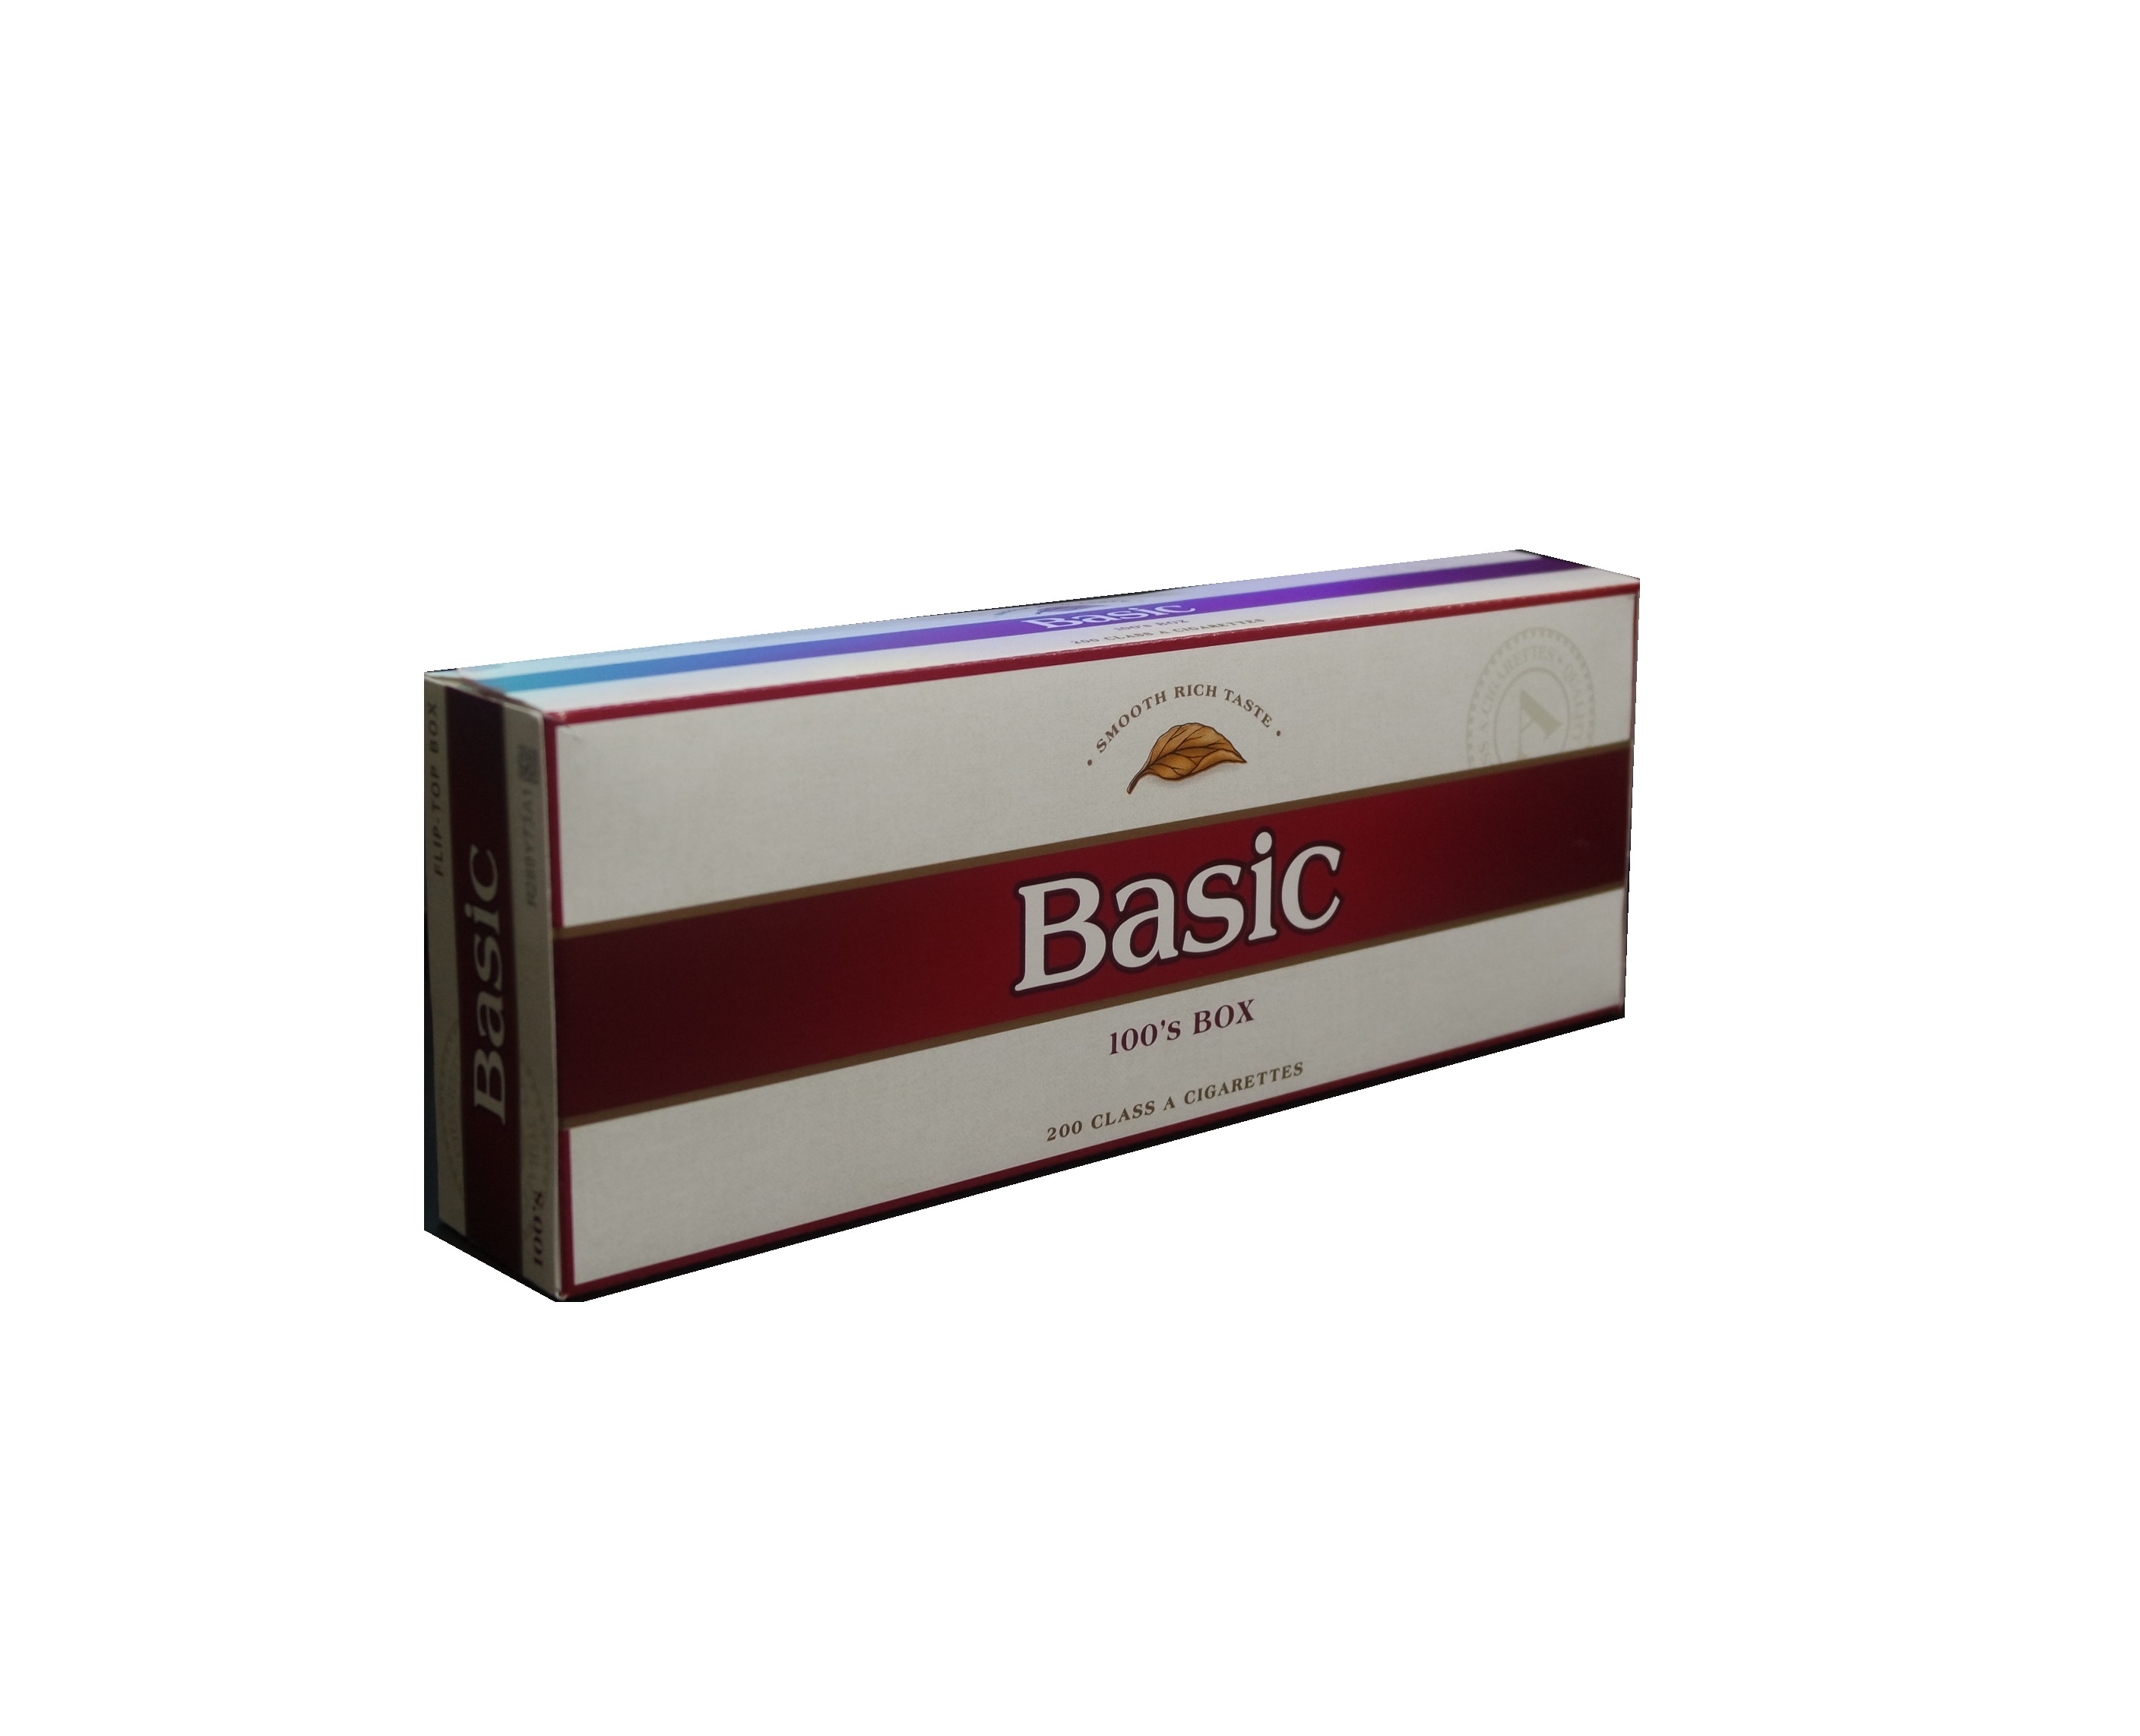 Basic 100 box